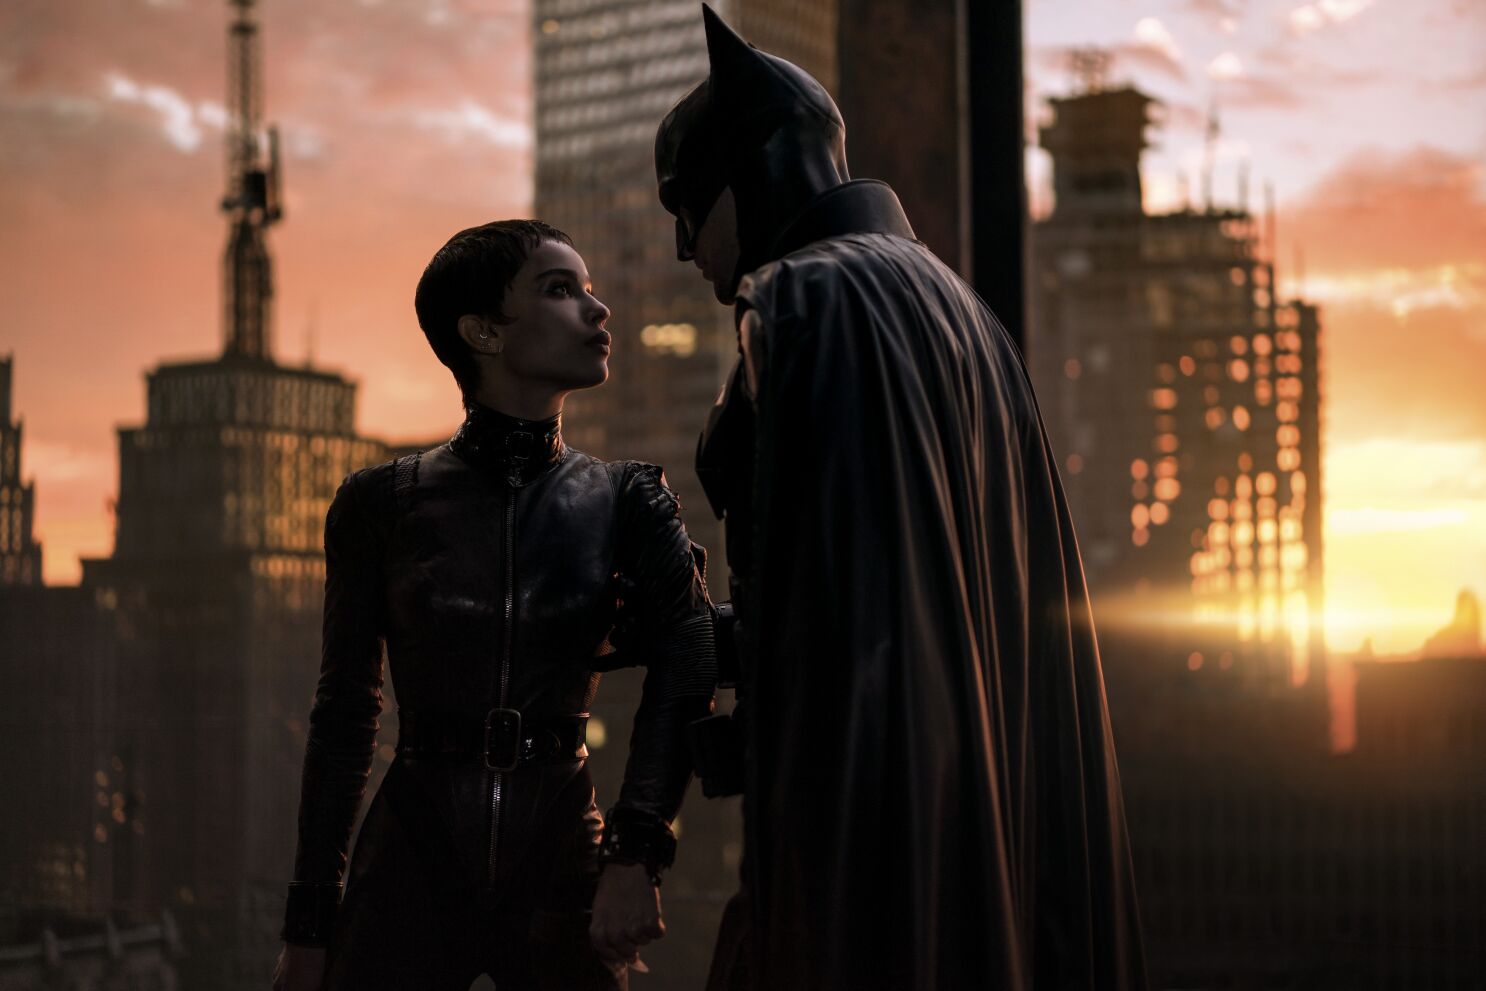 Reseña: Un Caballero de la Noche lúgubre en 'The Batman' - Los Angeles Times